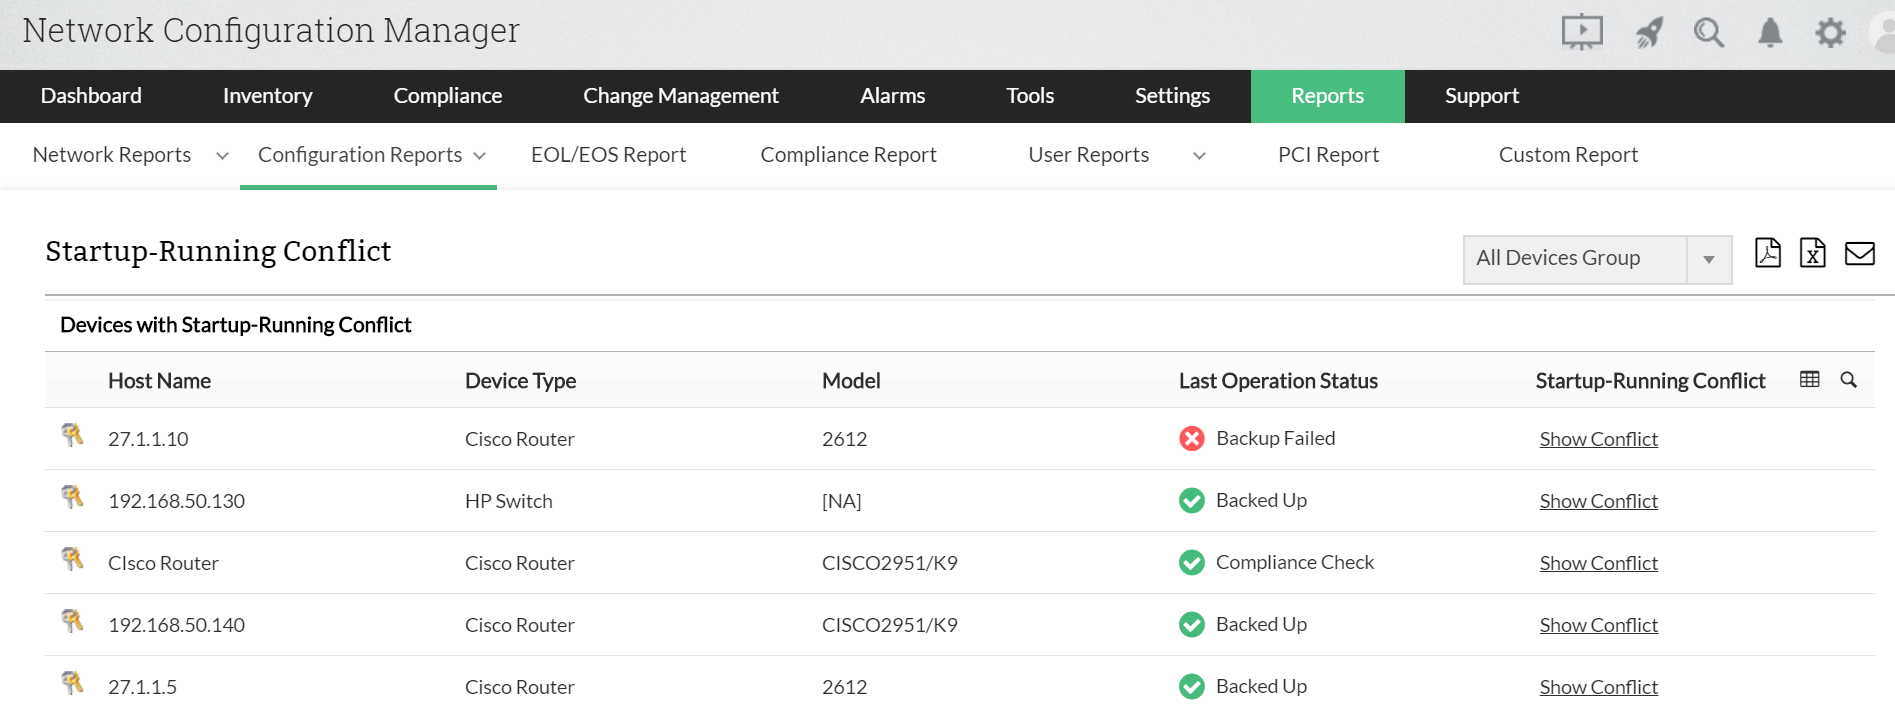 Dashboard de informes de conflictos de inicio-ejecución de dispositivos de Network Configuration Manager